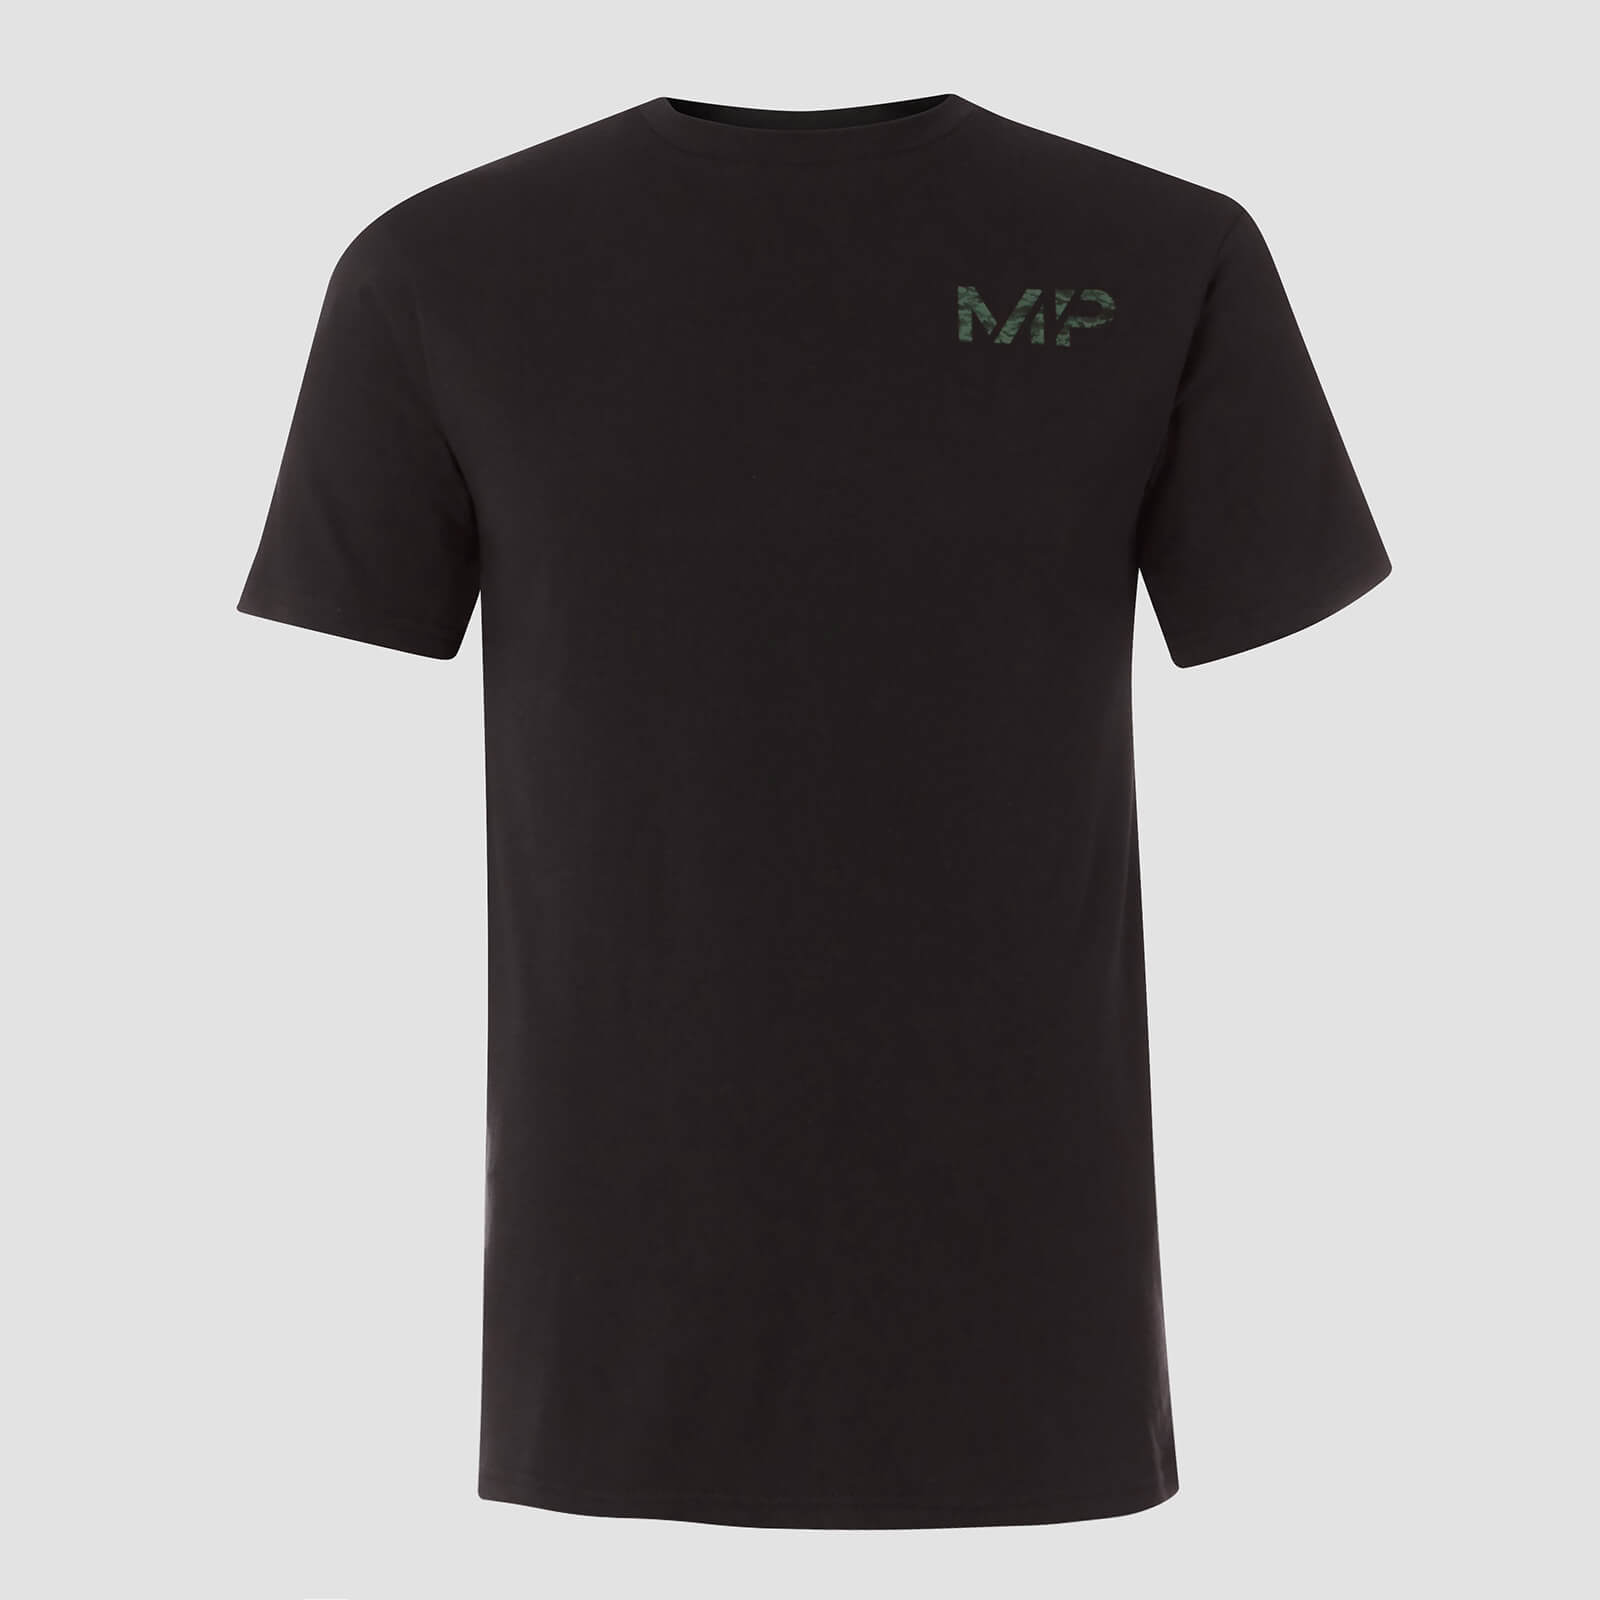 T-shirt MP Geo Camo - Noir et Vert - XS